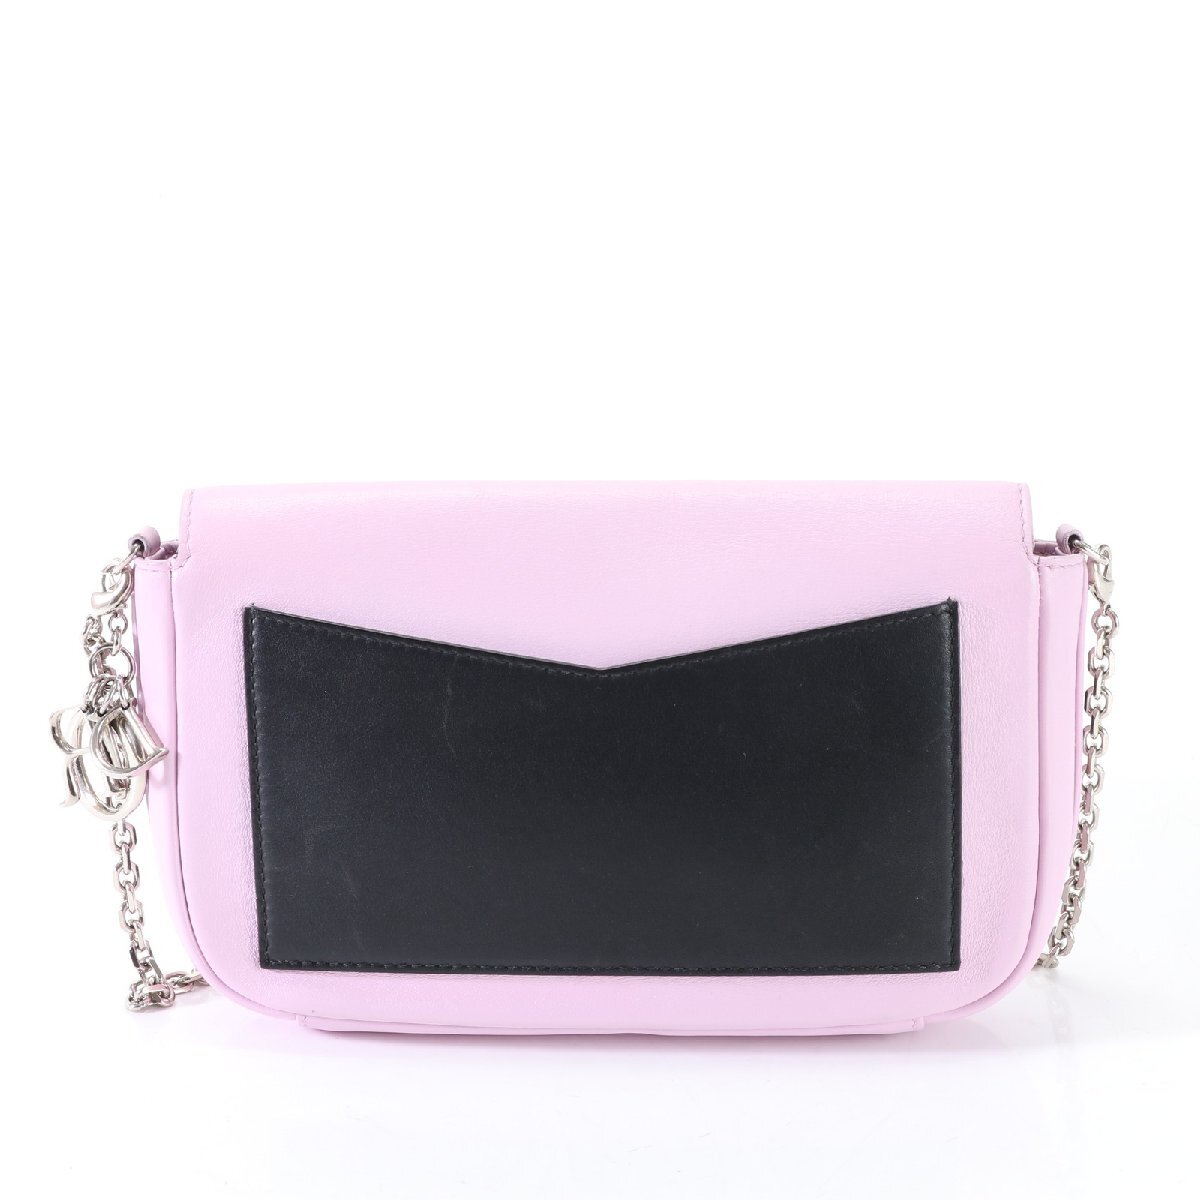 1 иен # превосходный товар # Christian Dior # кожа # серебряная цепь сумка на плечо # рука большая сумка популярный Pink Lady -sEJT G12-10